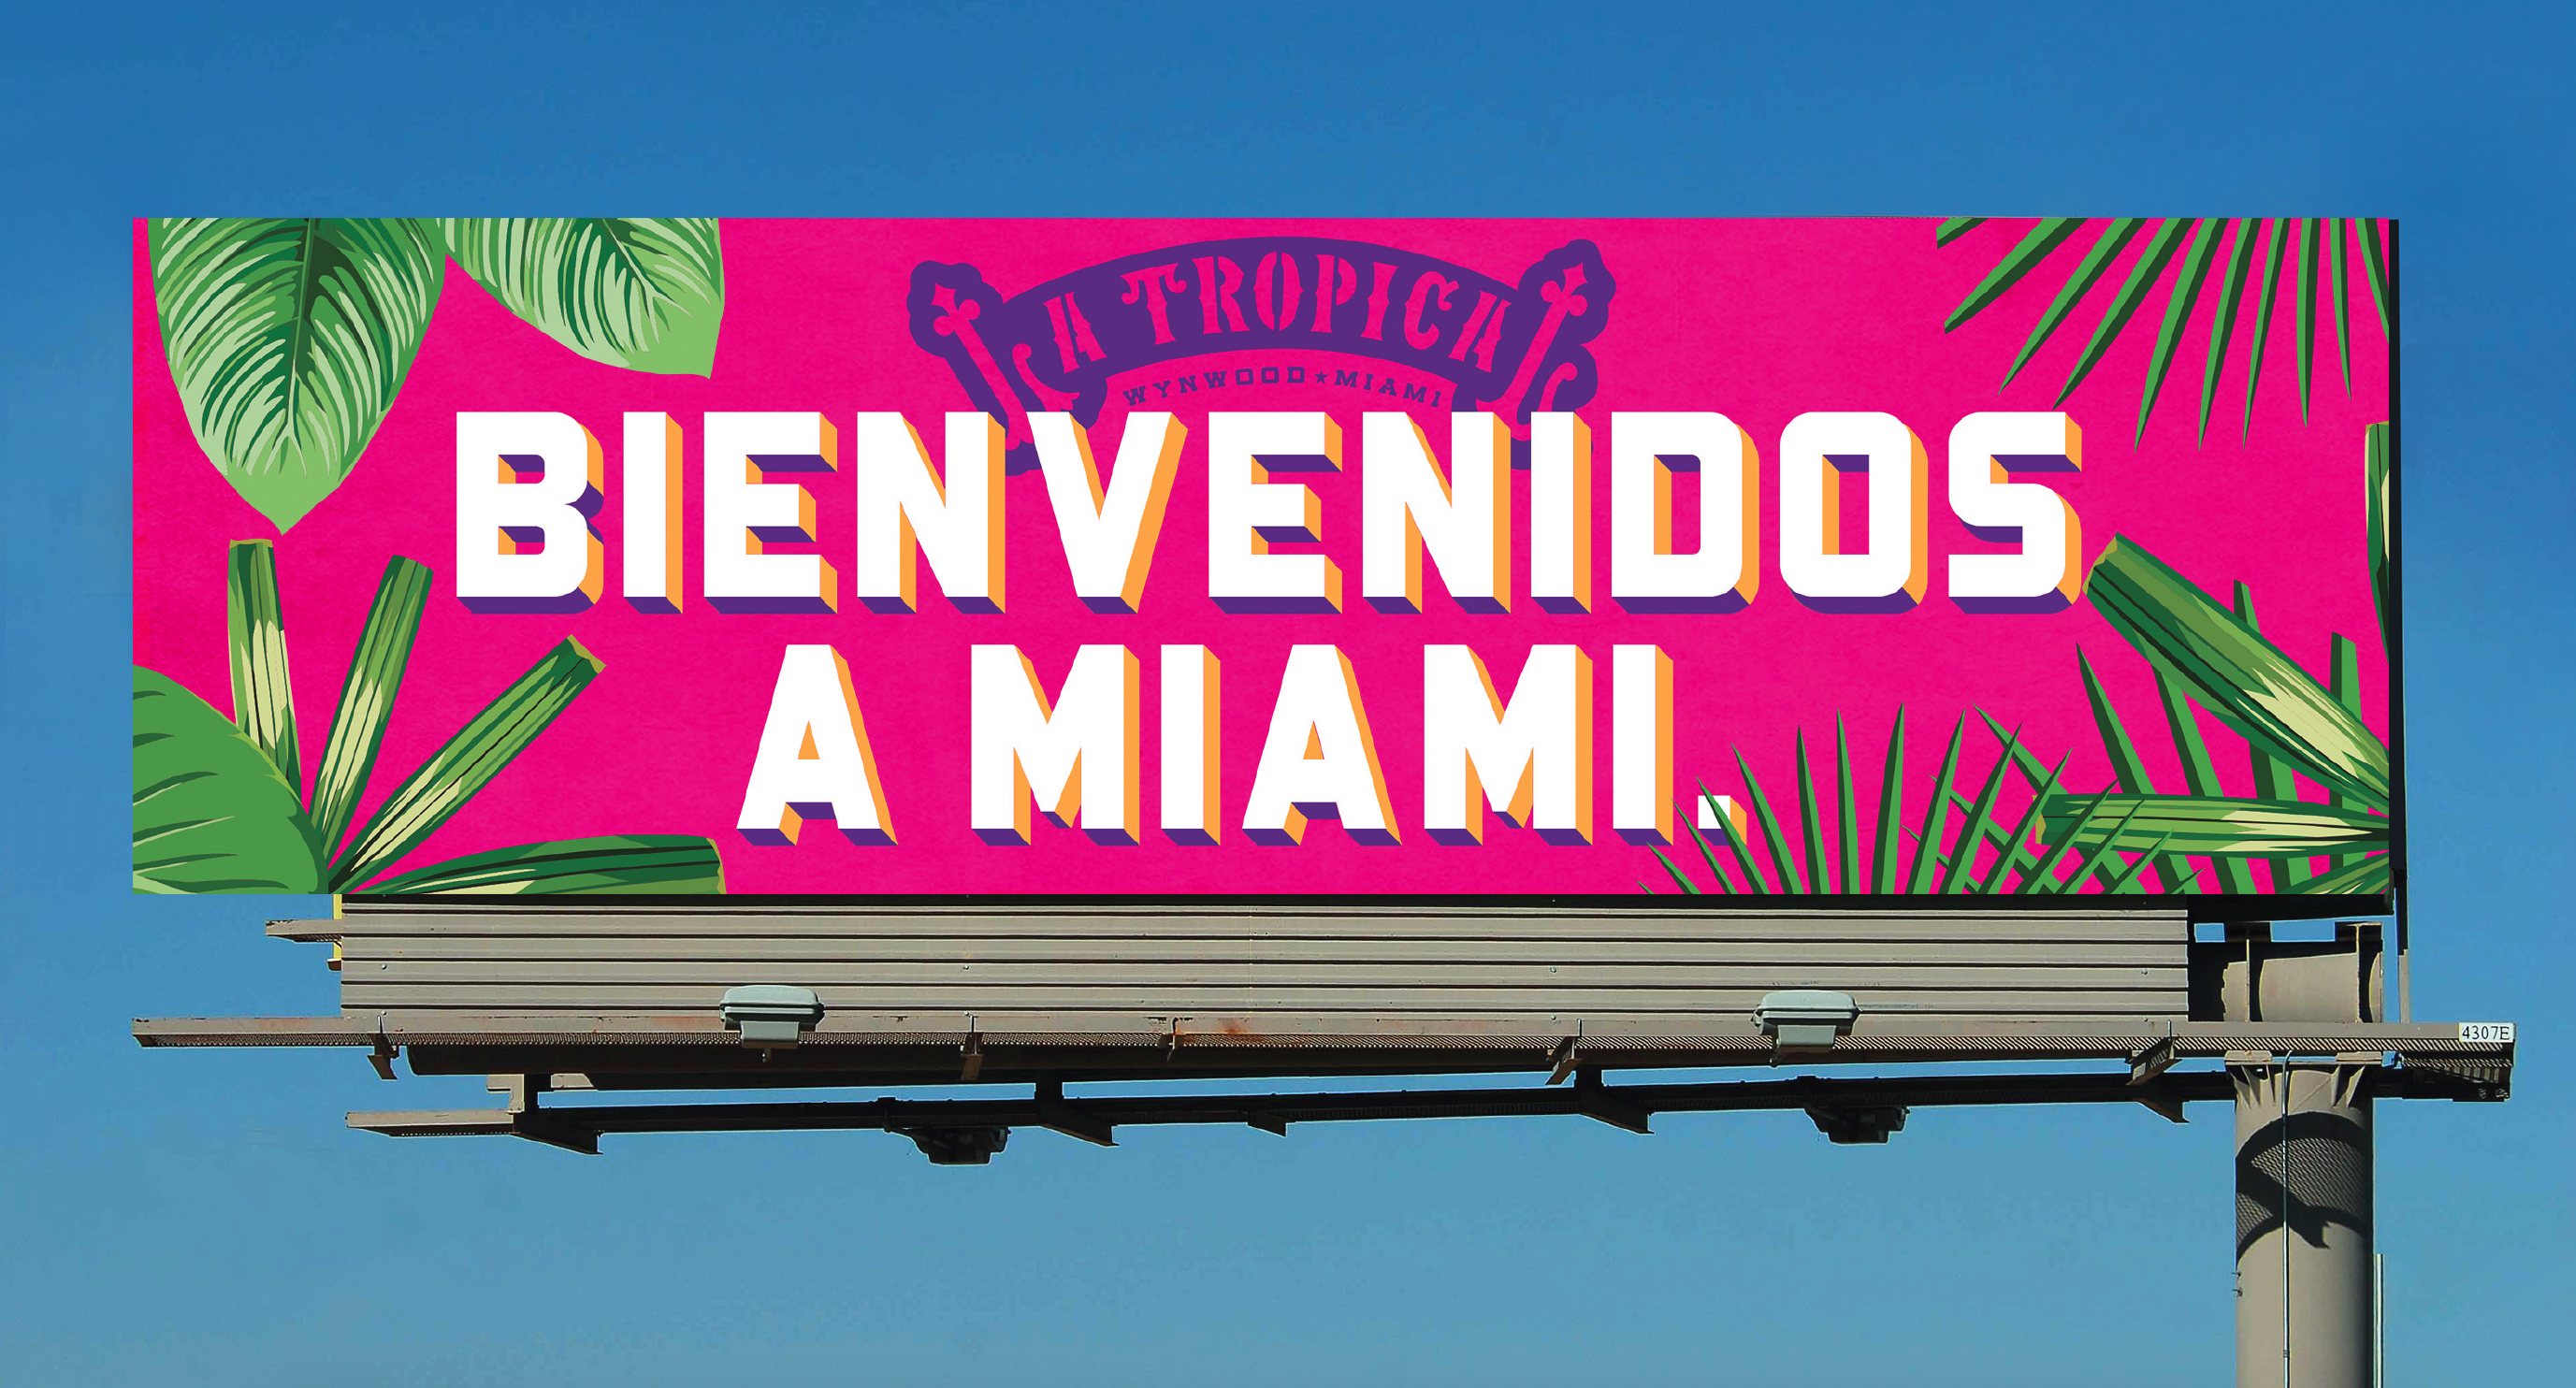 Miami Brewery Billboard design for La Tropical